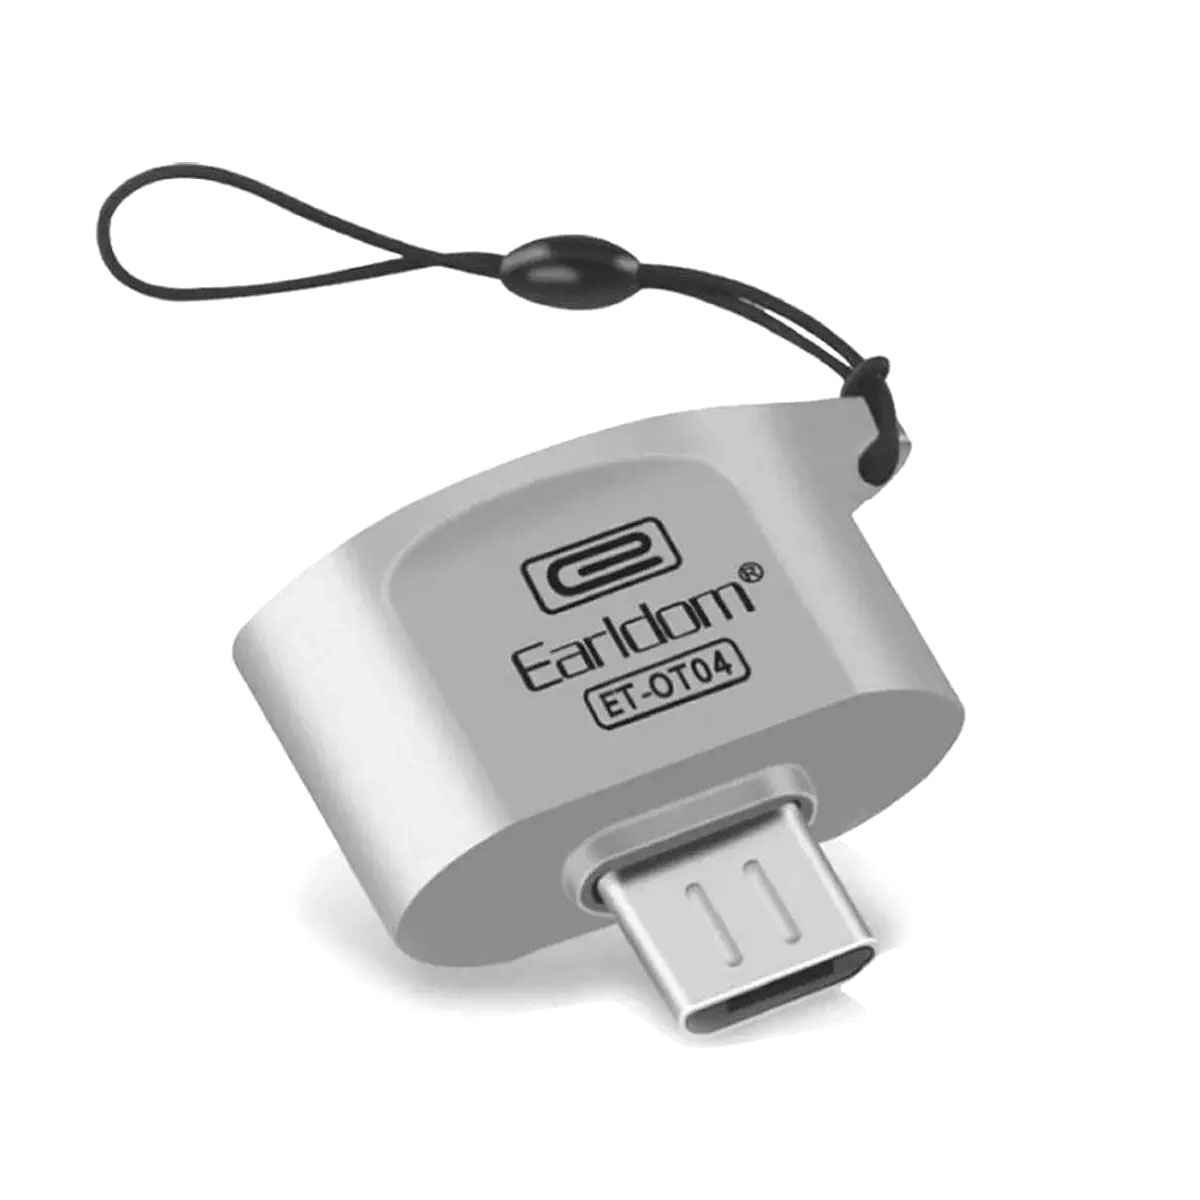 Адаптер, переходник, конвертер EARLDOM ET-OT04 Micro USB на USB 2.0, поддержка OTG, цвет серебристый